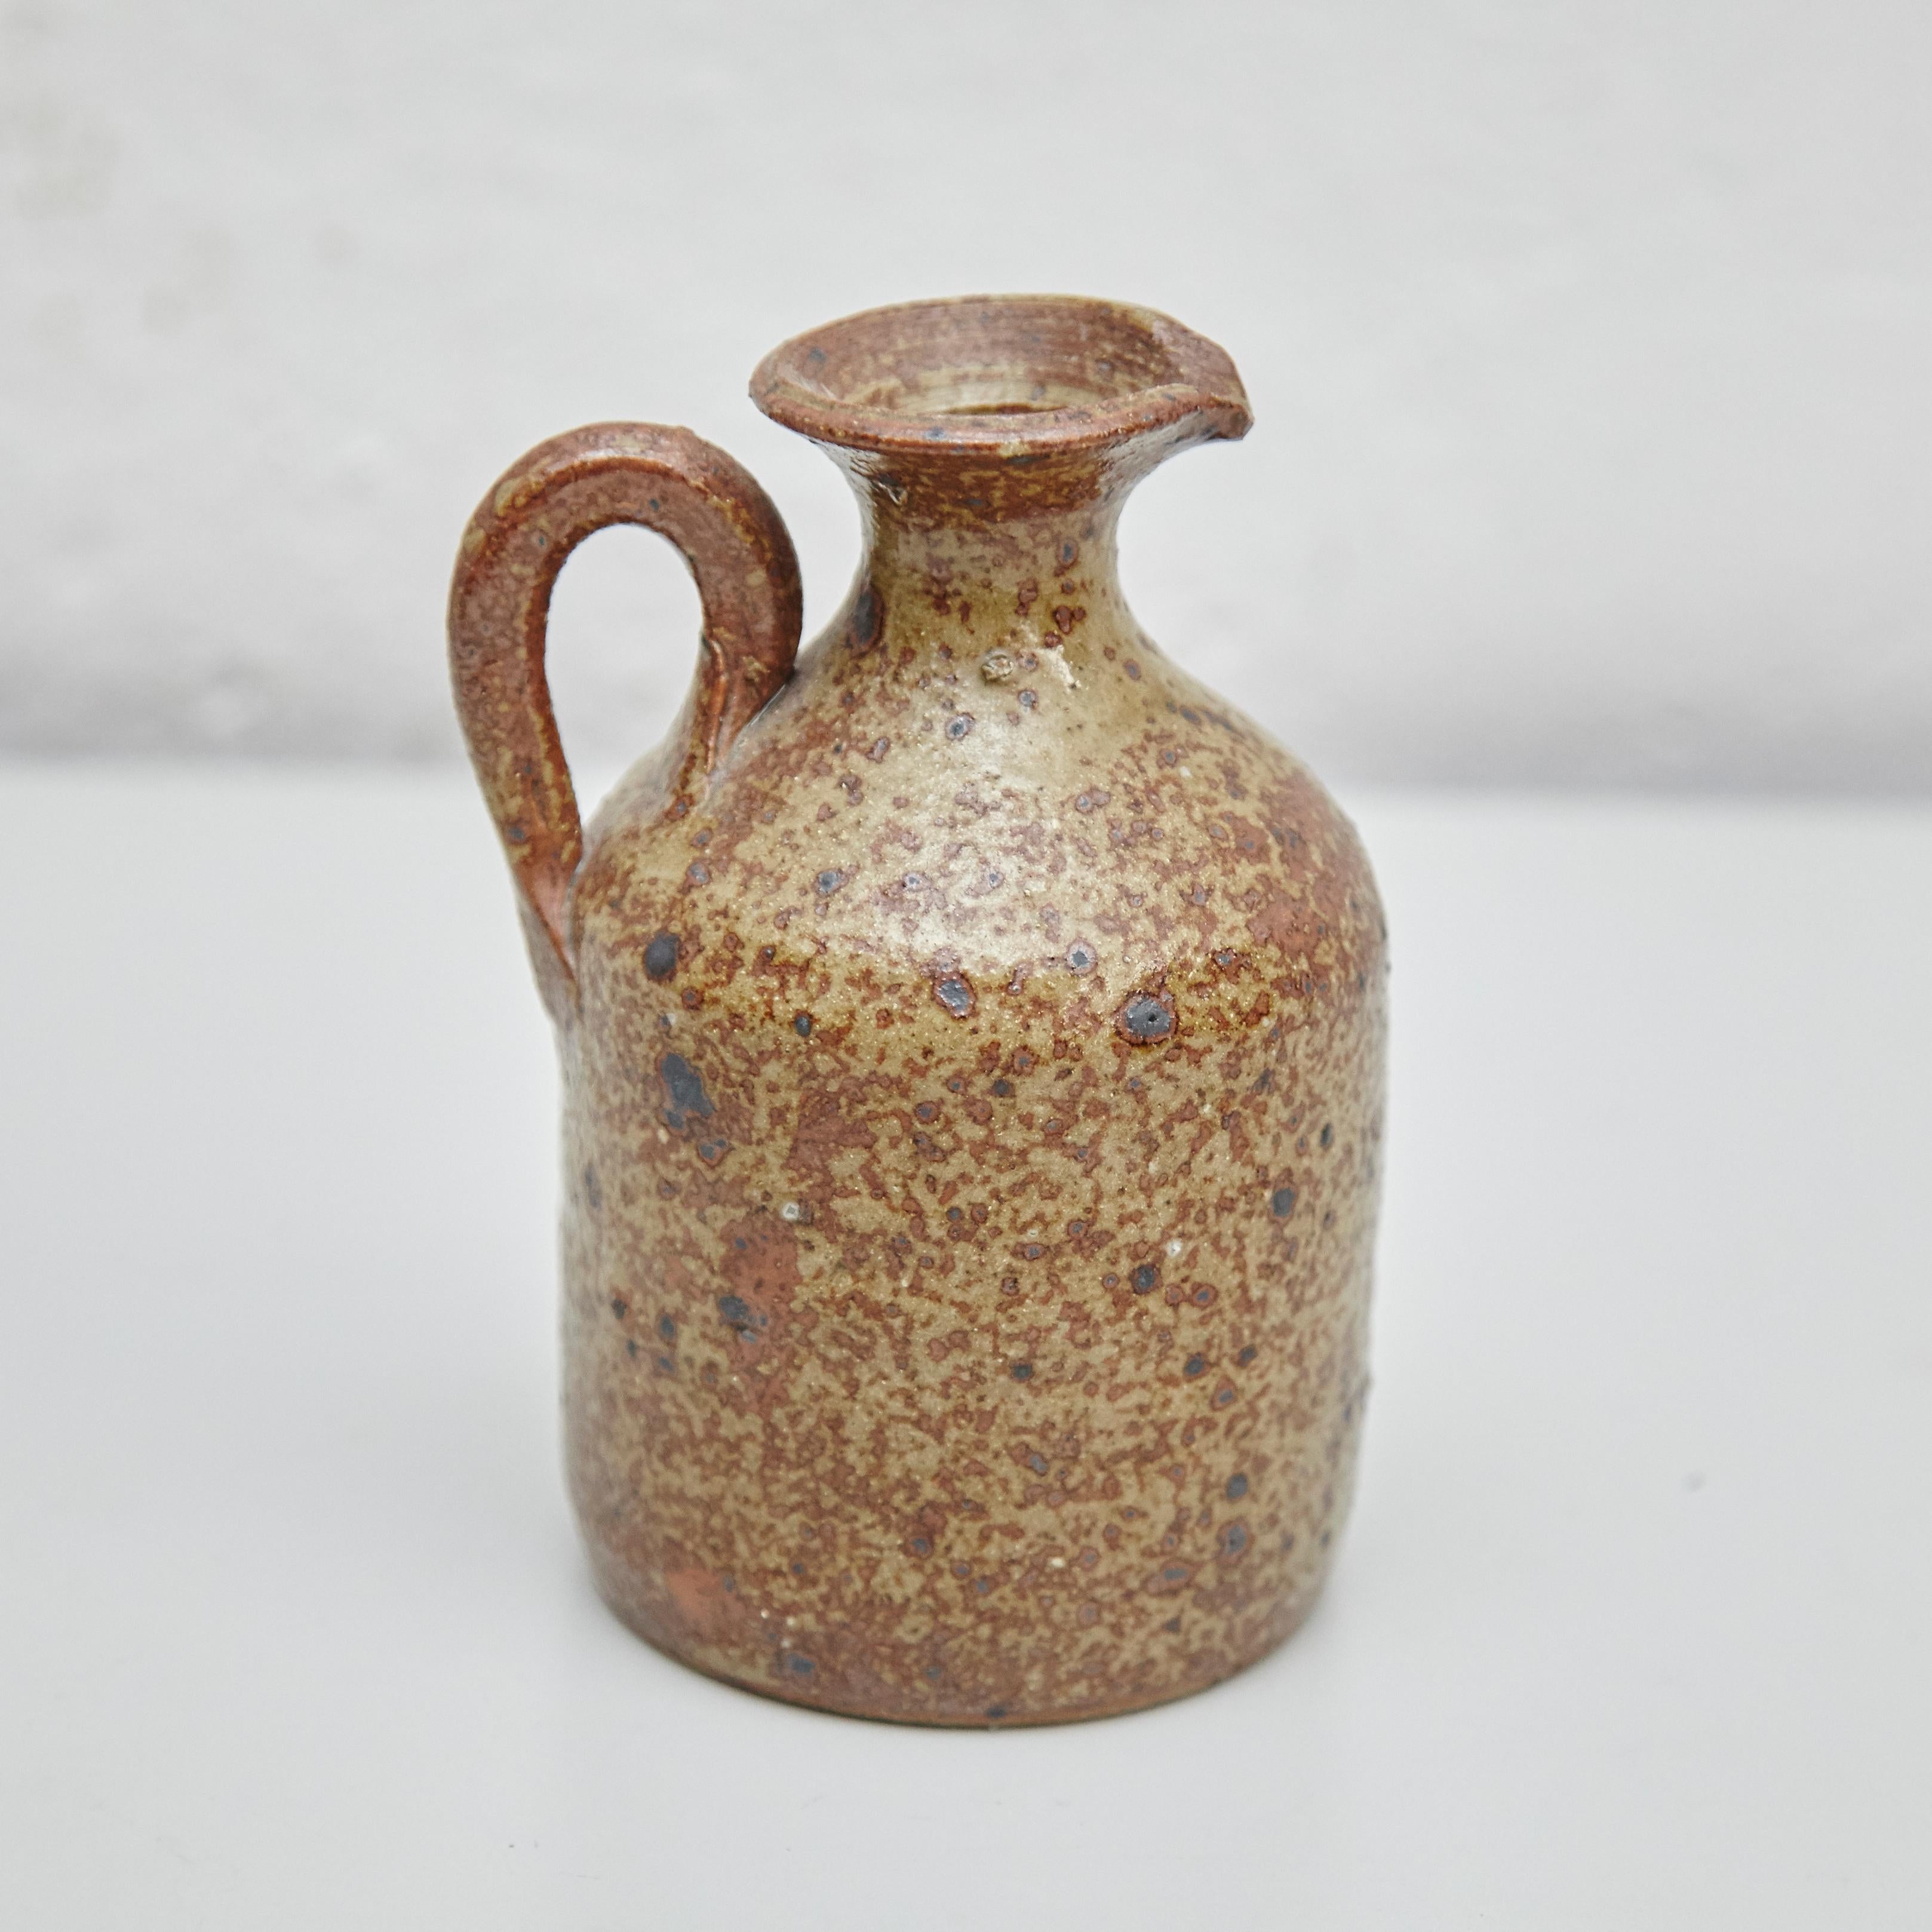 Traditional Rustic Spanish Ceramic 3